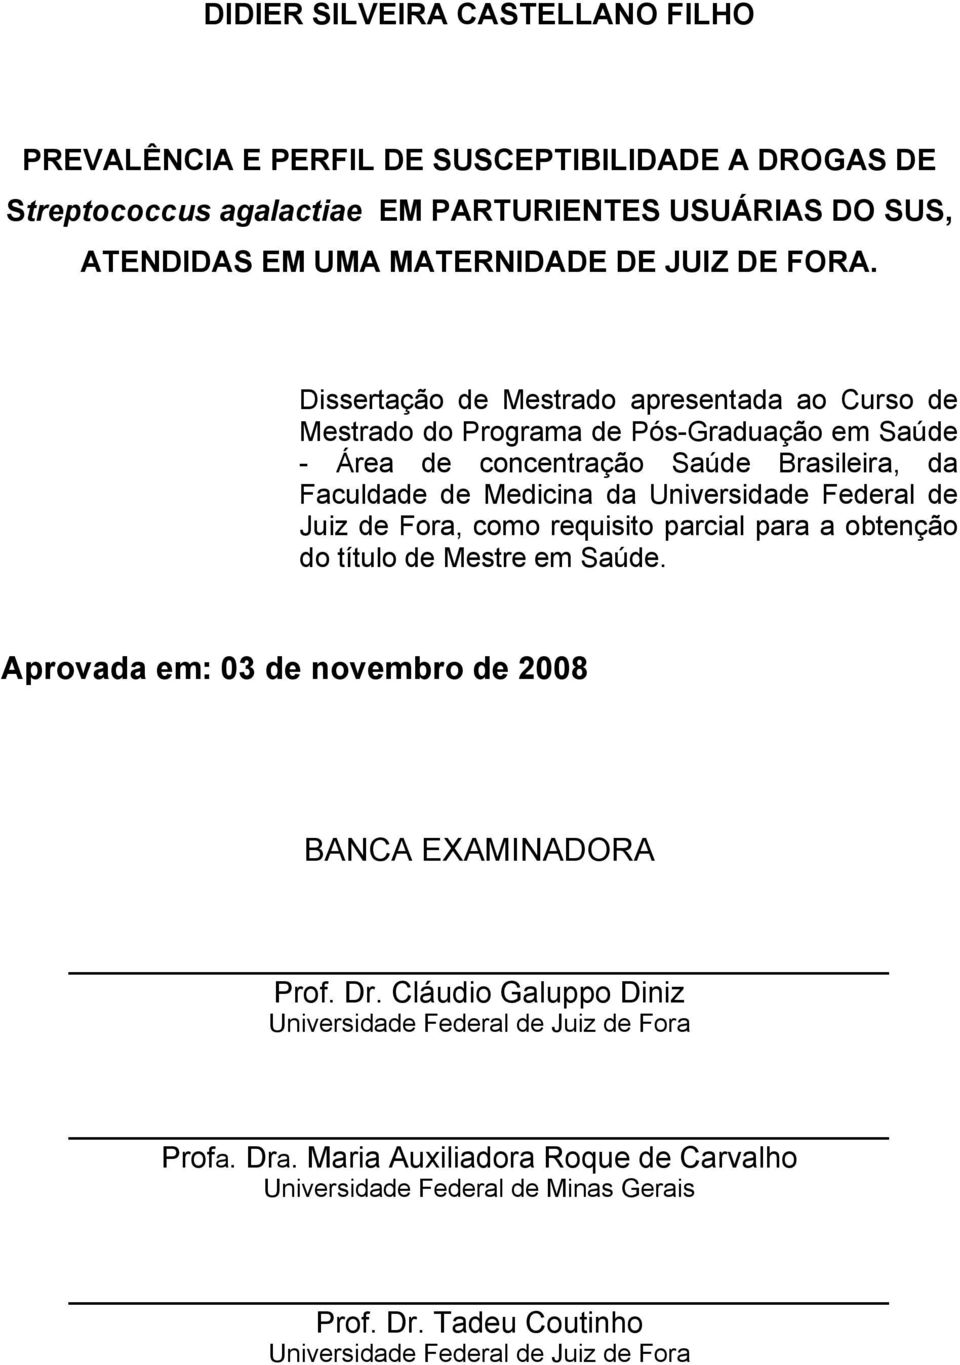 Dissertação de Mestrado apresentada ao Curso de Mestrado do Programa de Pós-Graduação em Saúde - Área de concentração Saúde Brasileira, da Faculdade de Medicina da Universidade